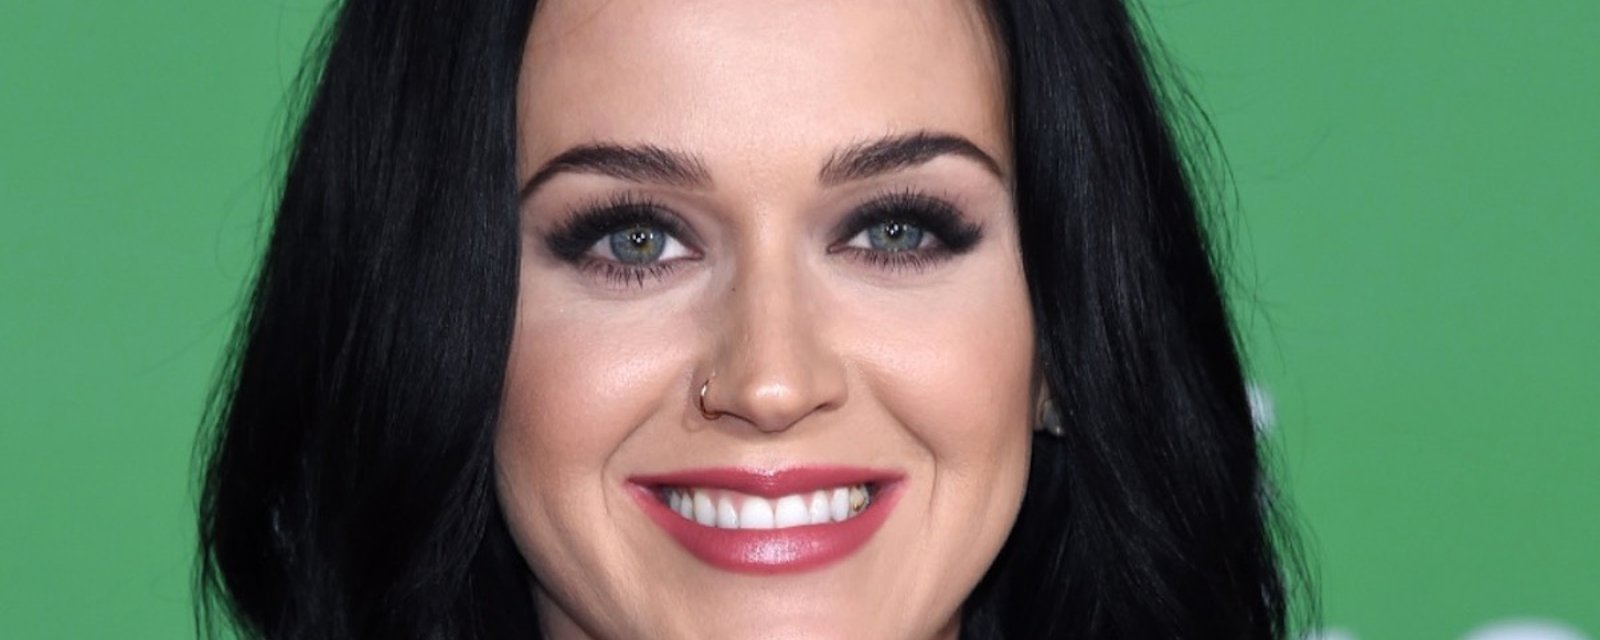 Katy Perry se métamorphose... Son nouveau look fait fureur! 